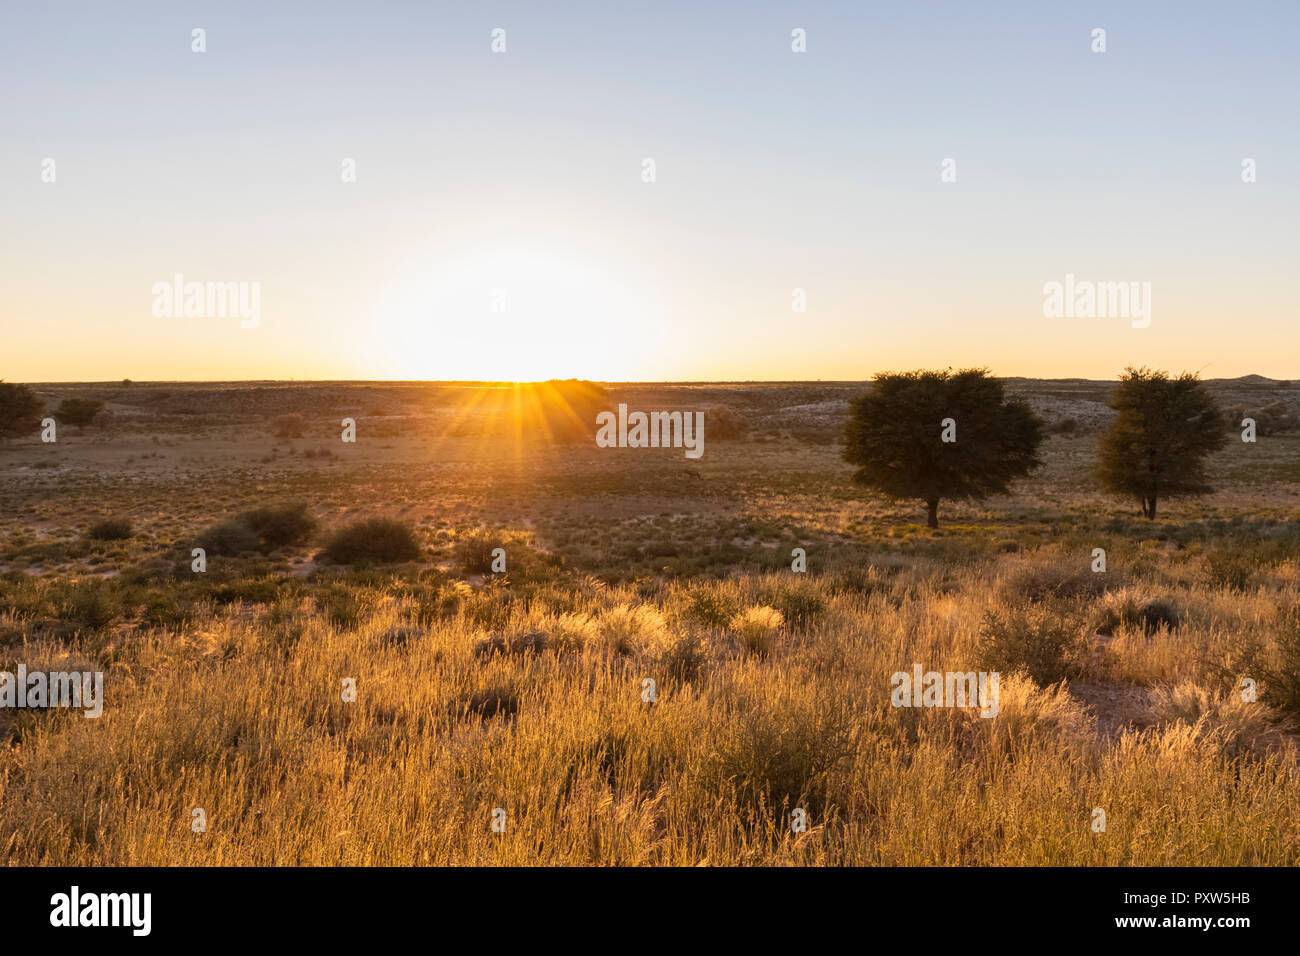 Le Botswana, Kgalagadi Transfrontier Park, Kalahari, le paysage au lever du soleil Banque D'Images